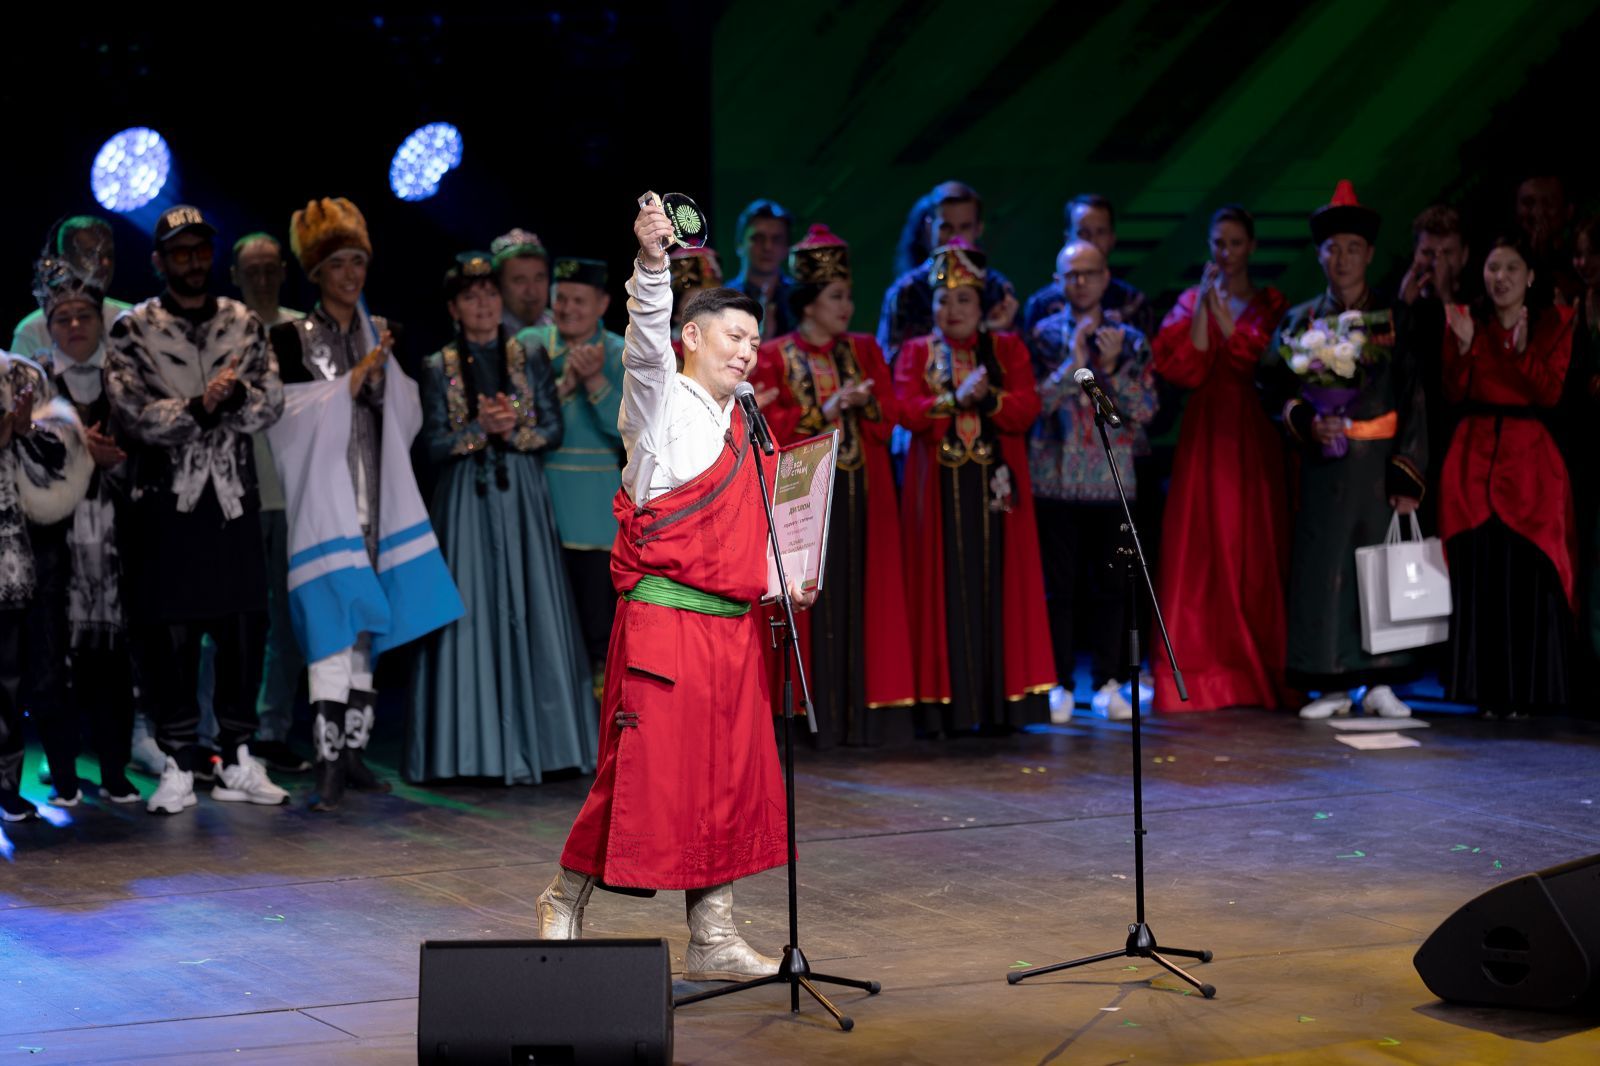 В Москве прошел финал Всероссийского конкурса этнической музыки «Вся страна»